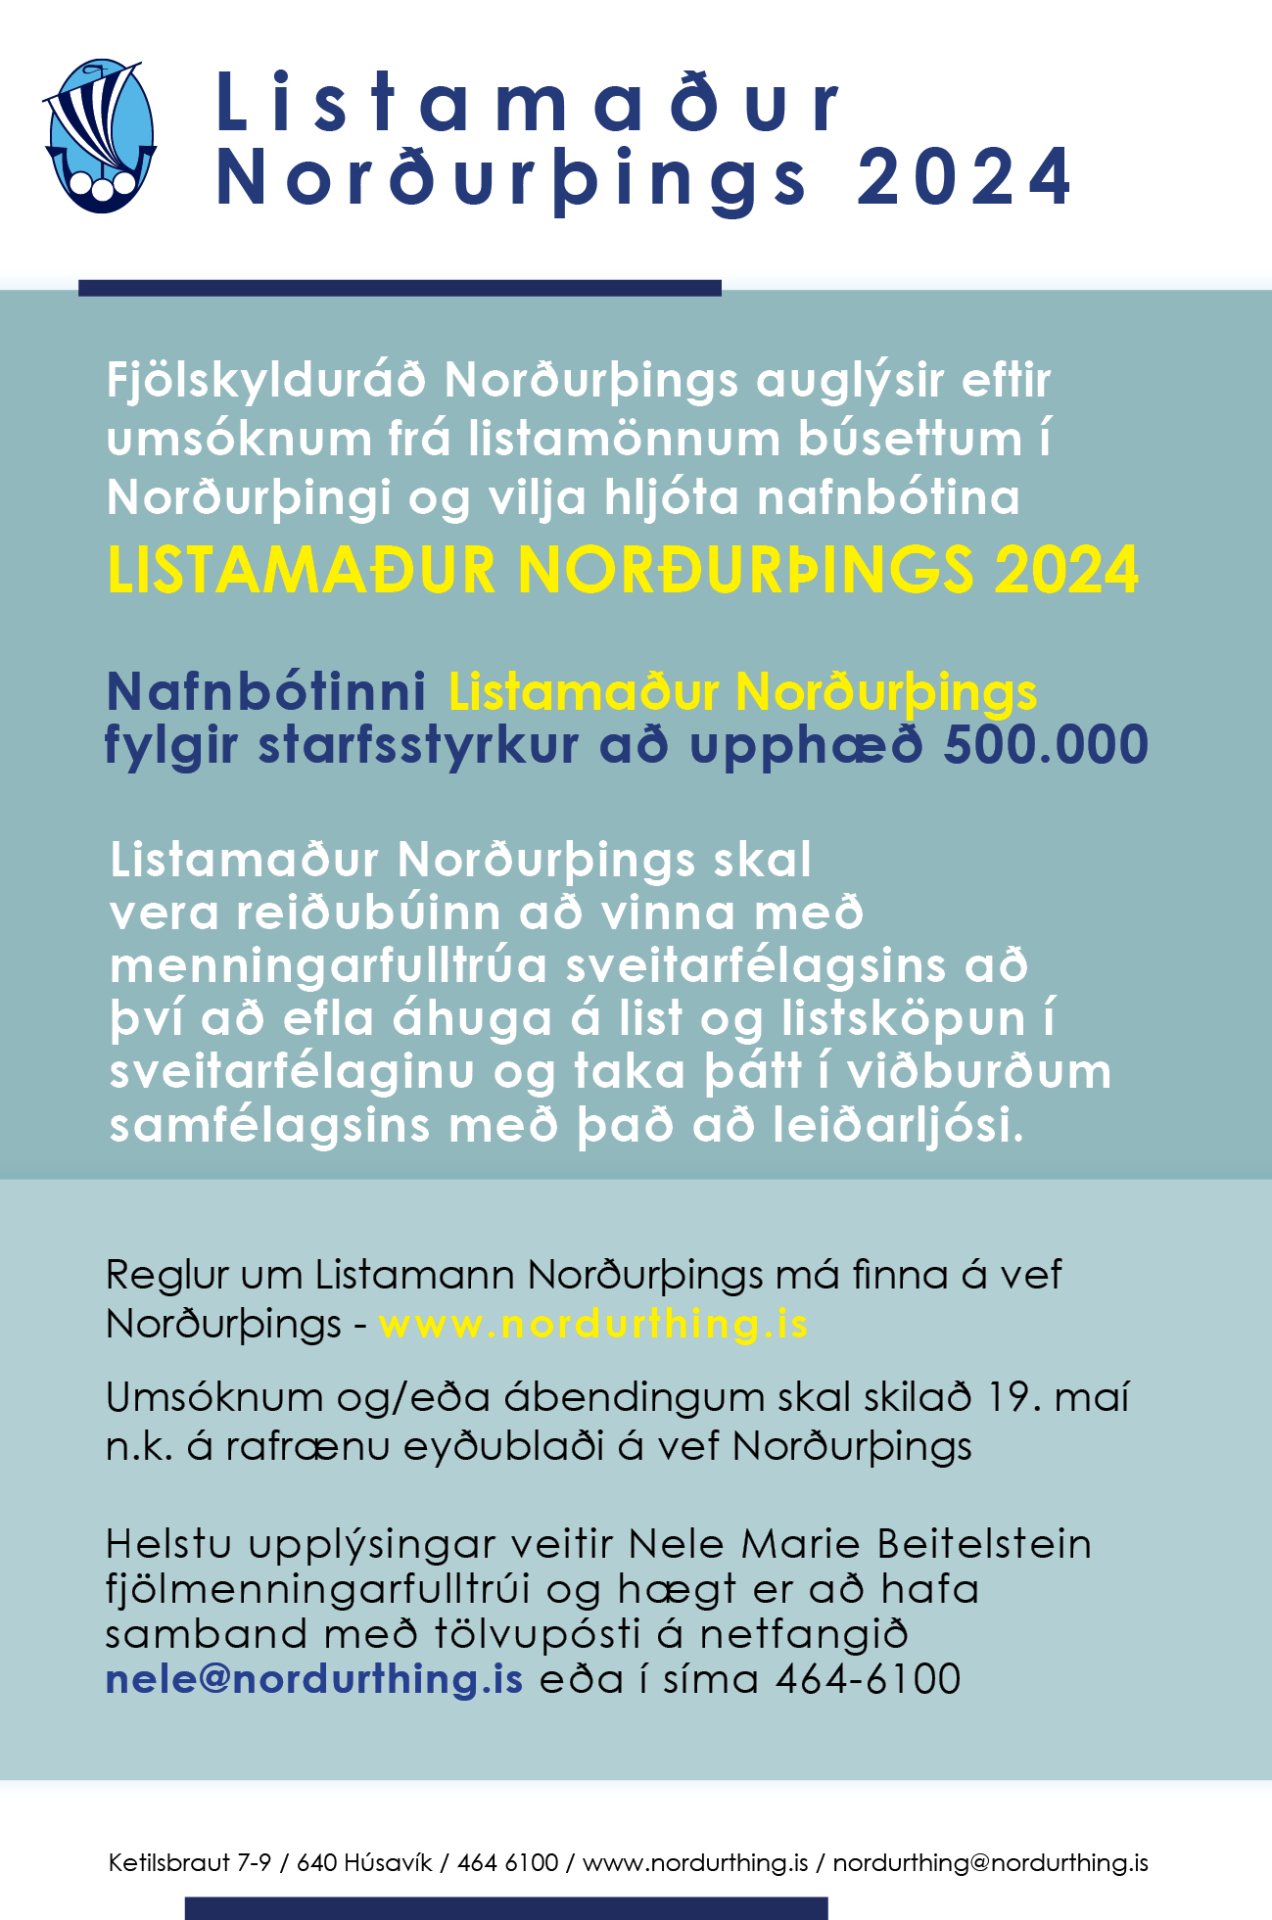 Listamaður Norðurþings 2024 - opið fyrir umsóknir